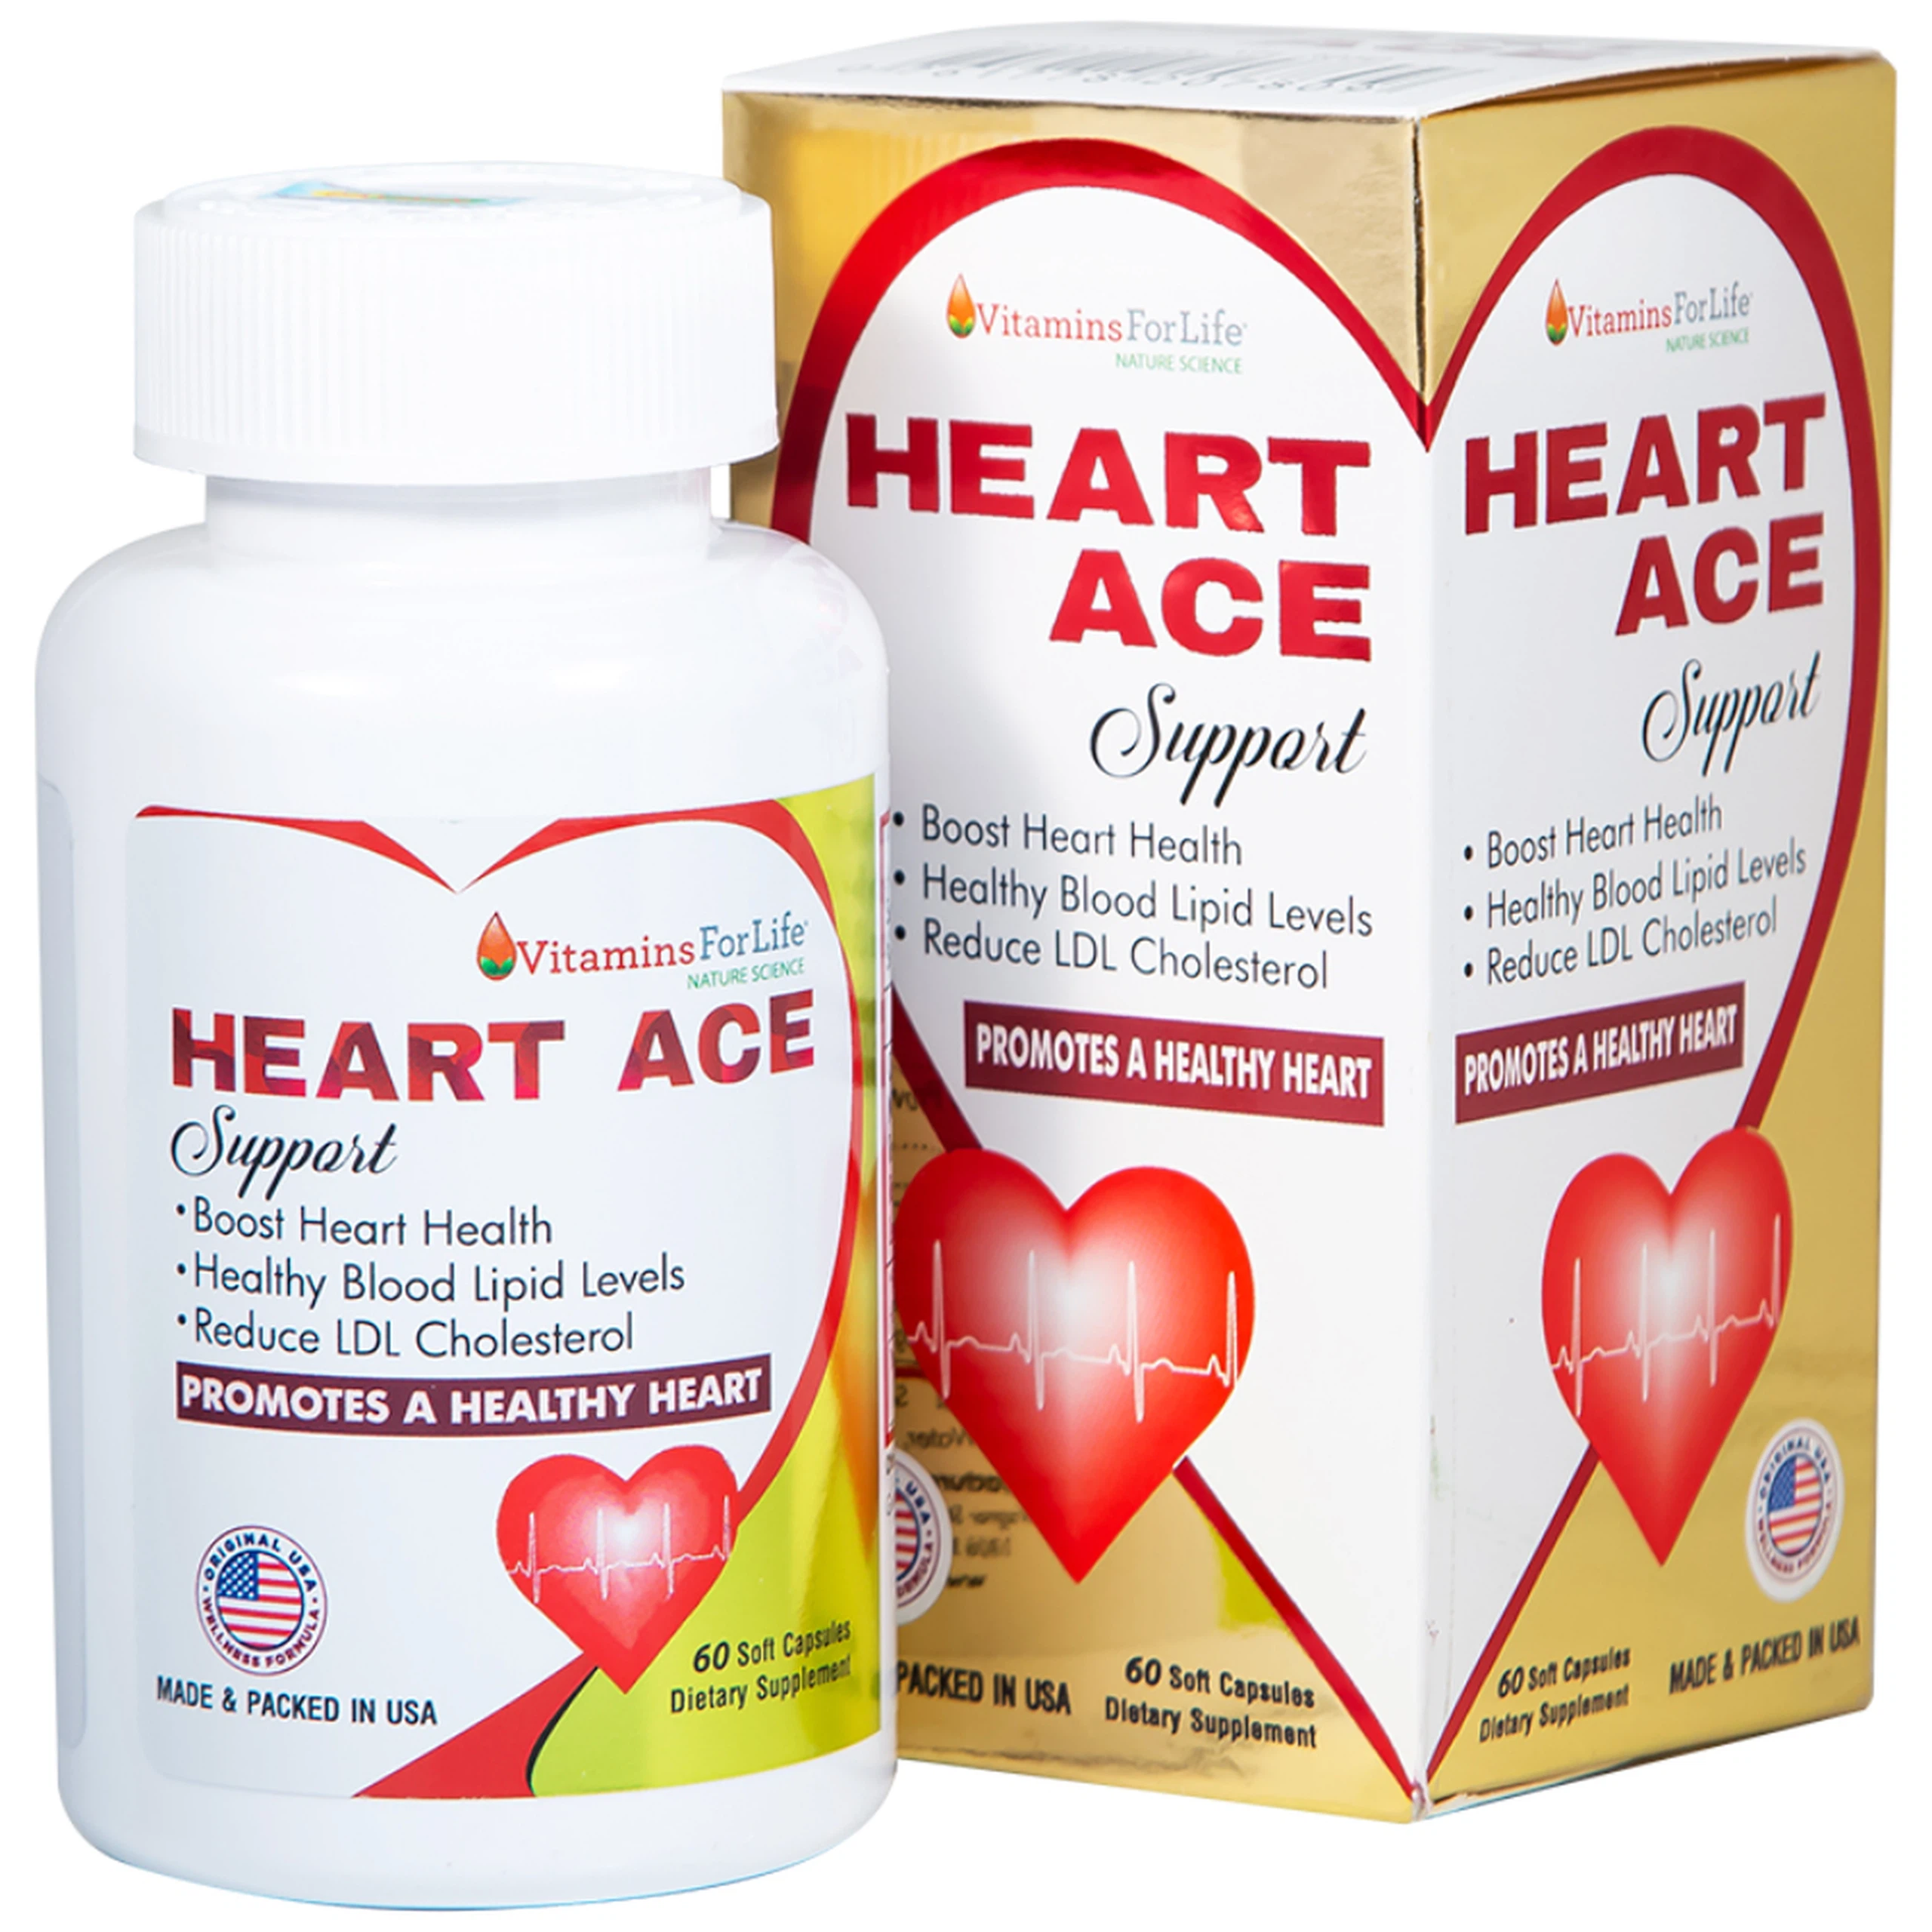 Viên uống Heart Ace Support Vitamins For Life hỗ trợ sức khỏe tim mạch, điều hòa nhịp tim (Hộp 60 viên)